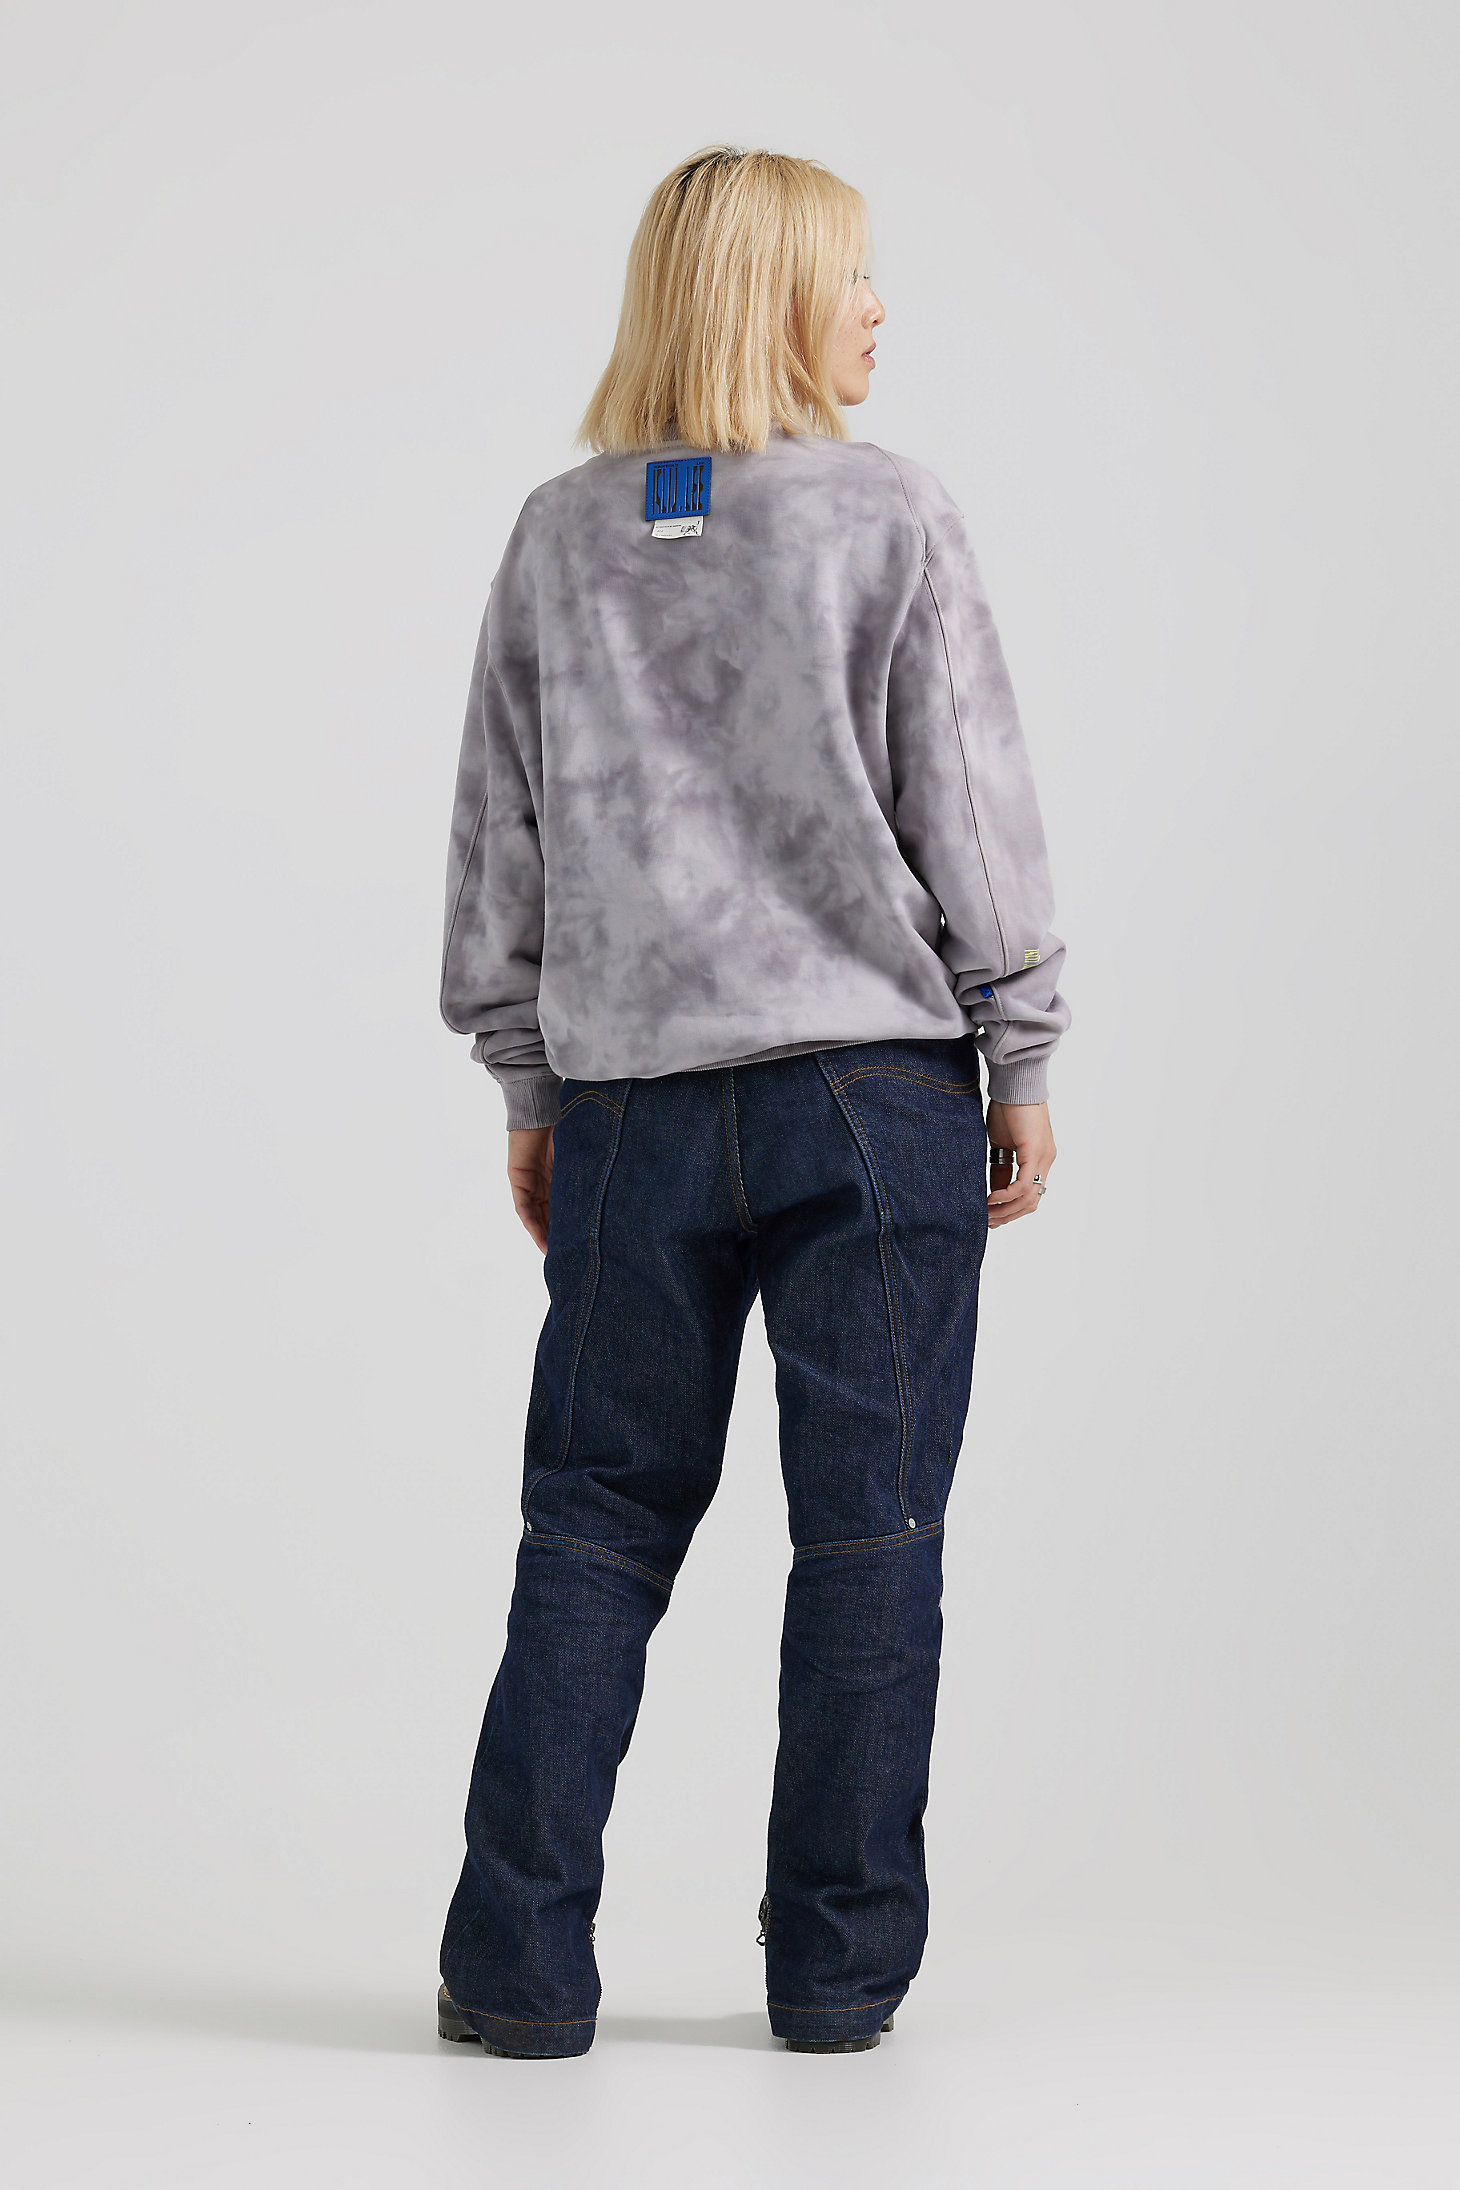 Unisex Lee® x ROARINGWILD® Oversized Sweatshirt in Silver Filigree alternative view 4